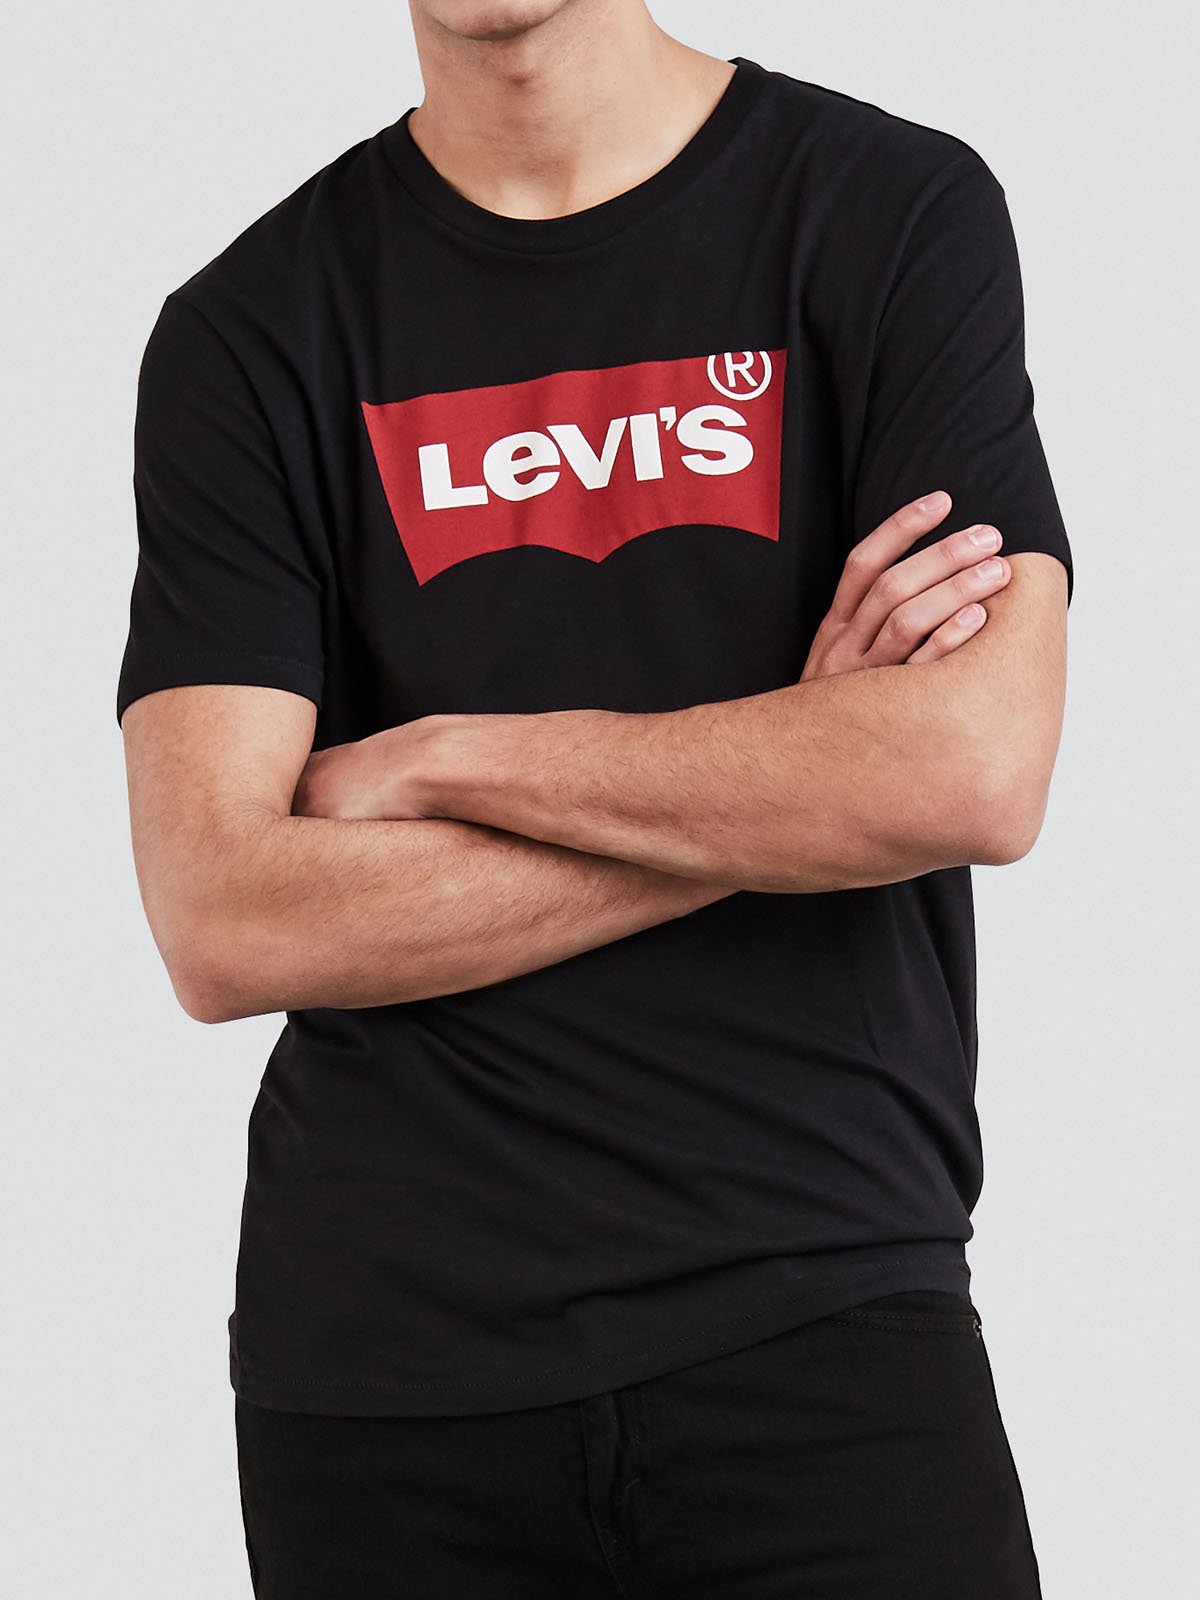 Levi's samarreta logo màniga curta d'home 17783-0137 negra